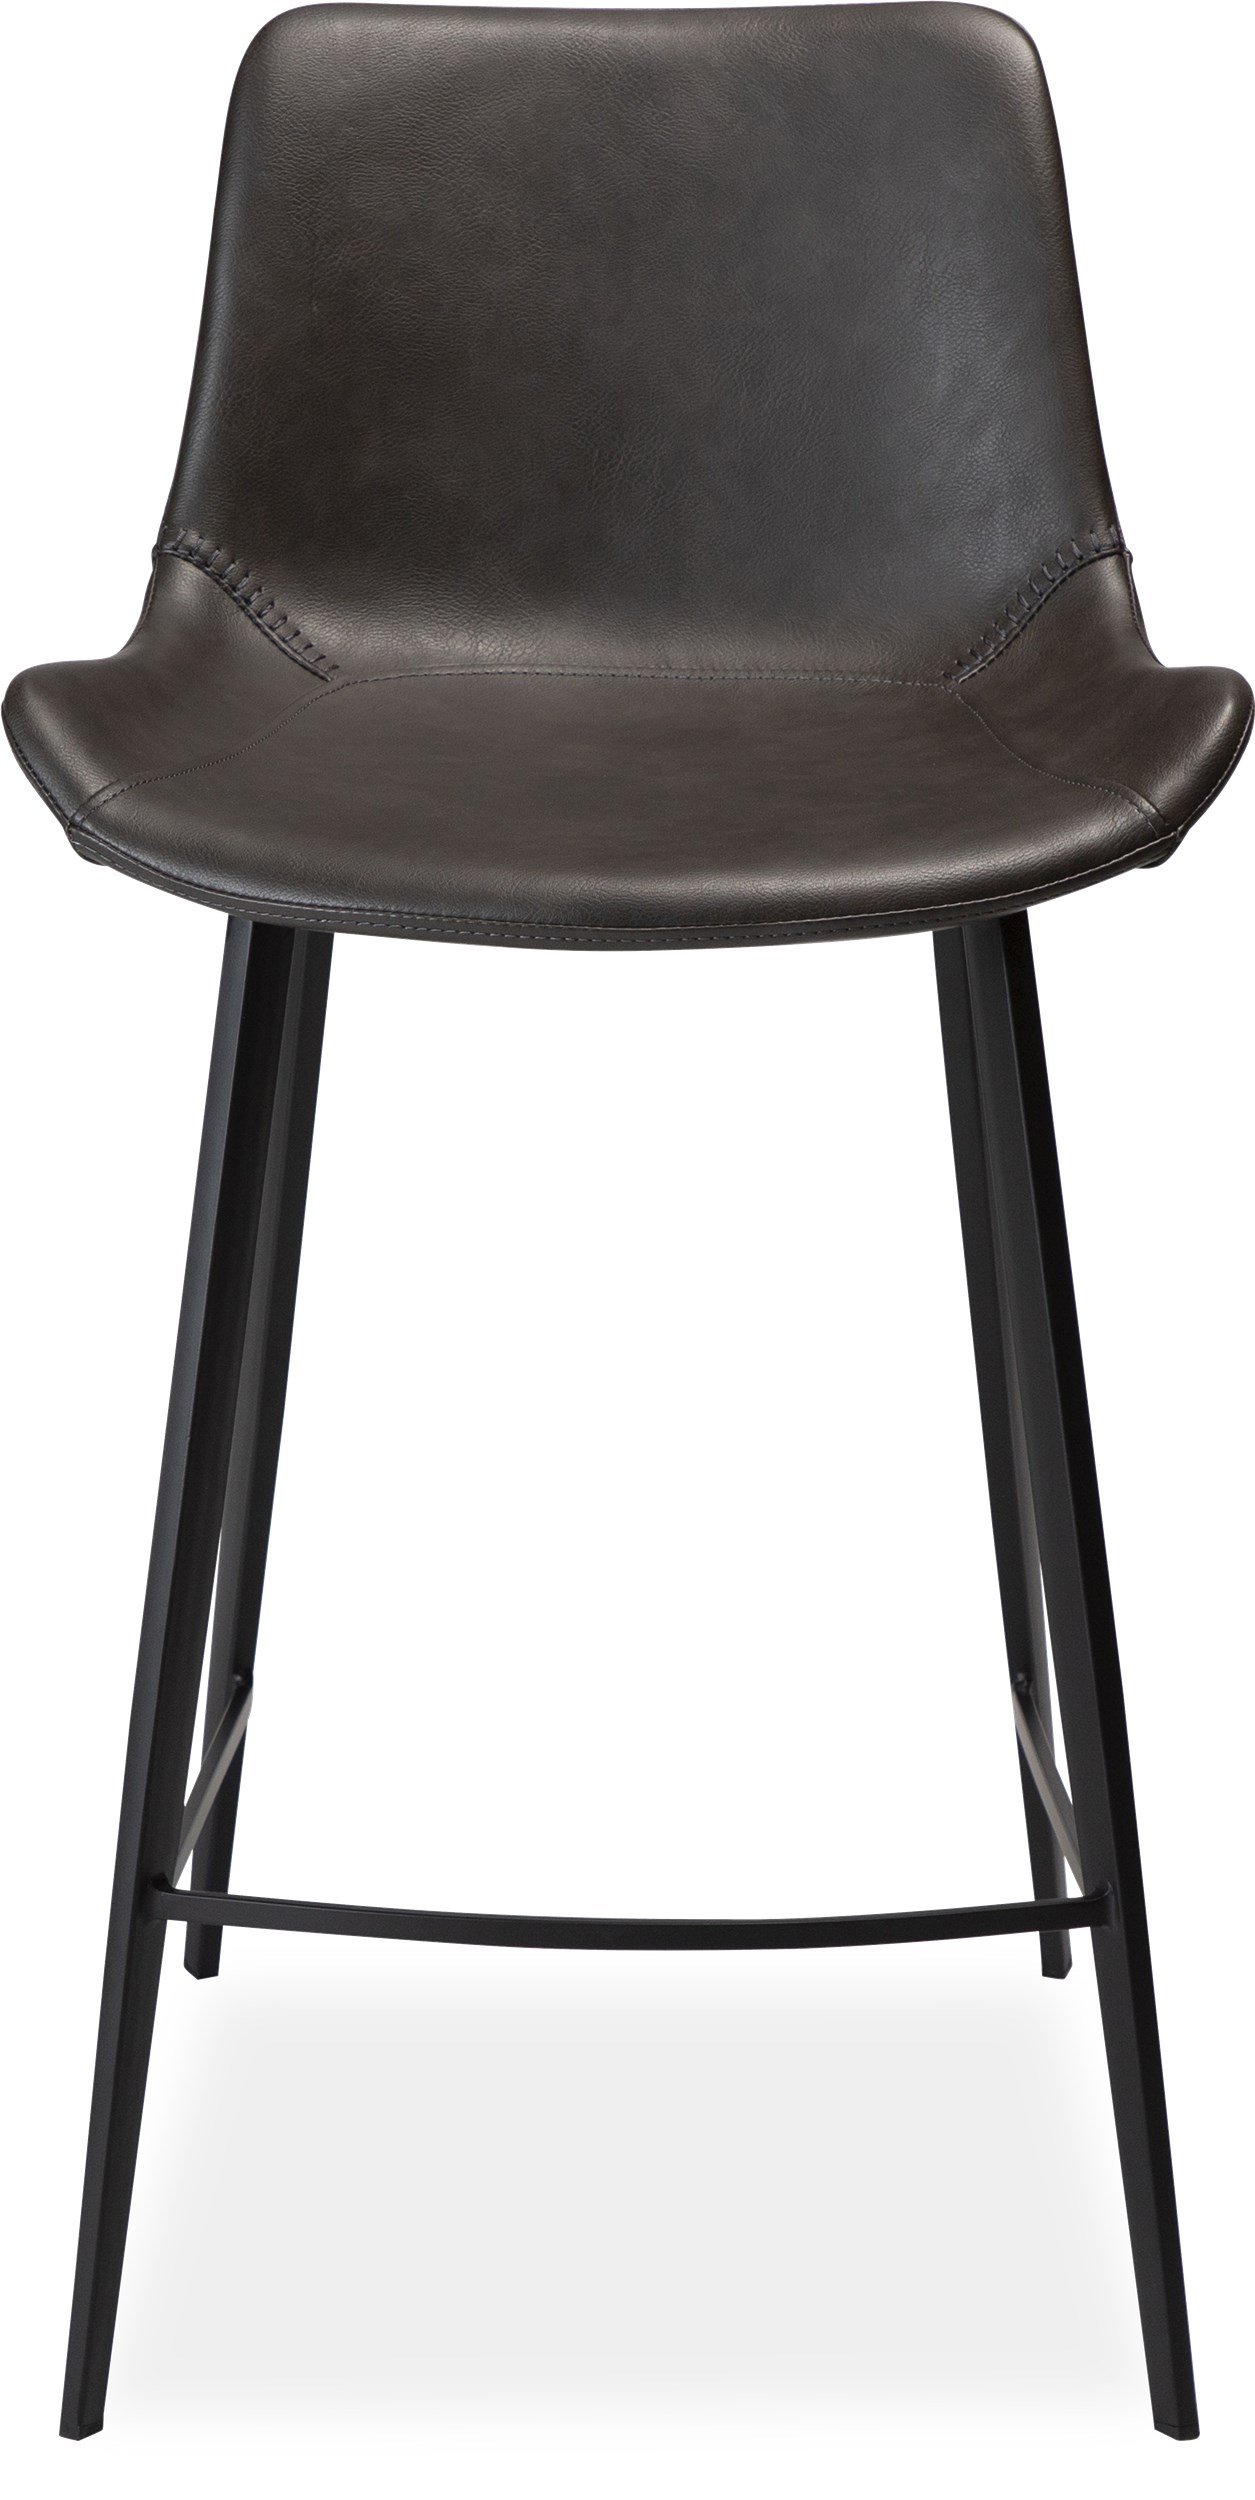 Hype Counterstol - Sæde i vintage grå kunstlæder og ben i sortlakeret metal